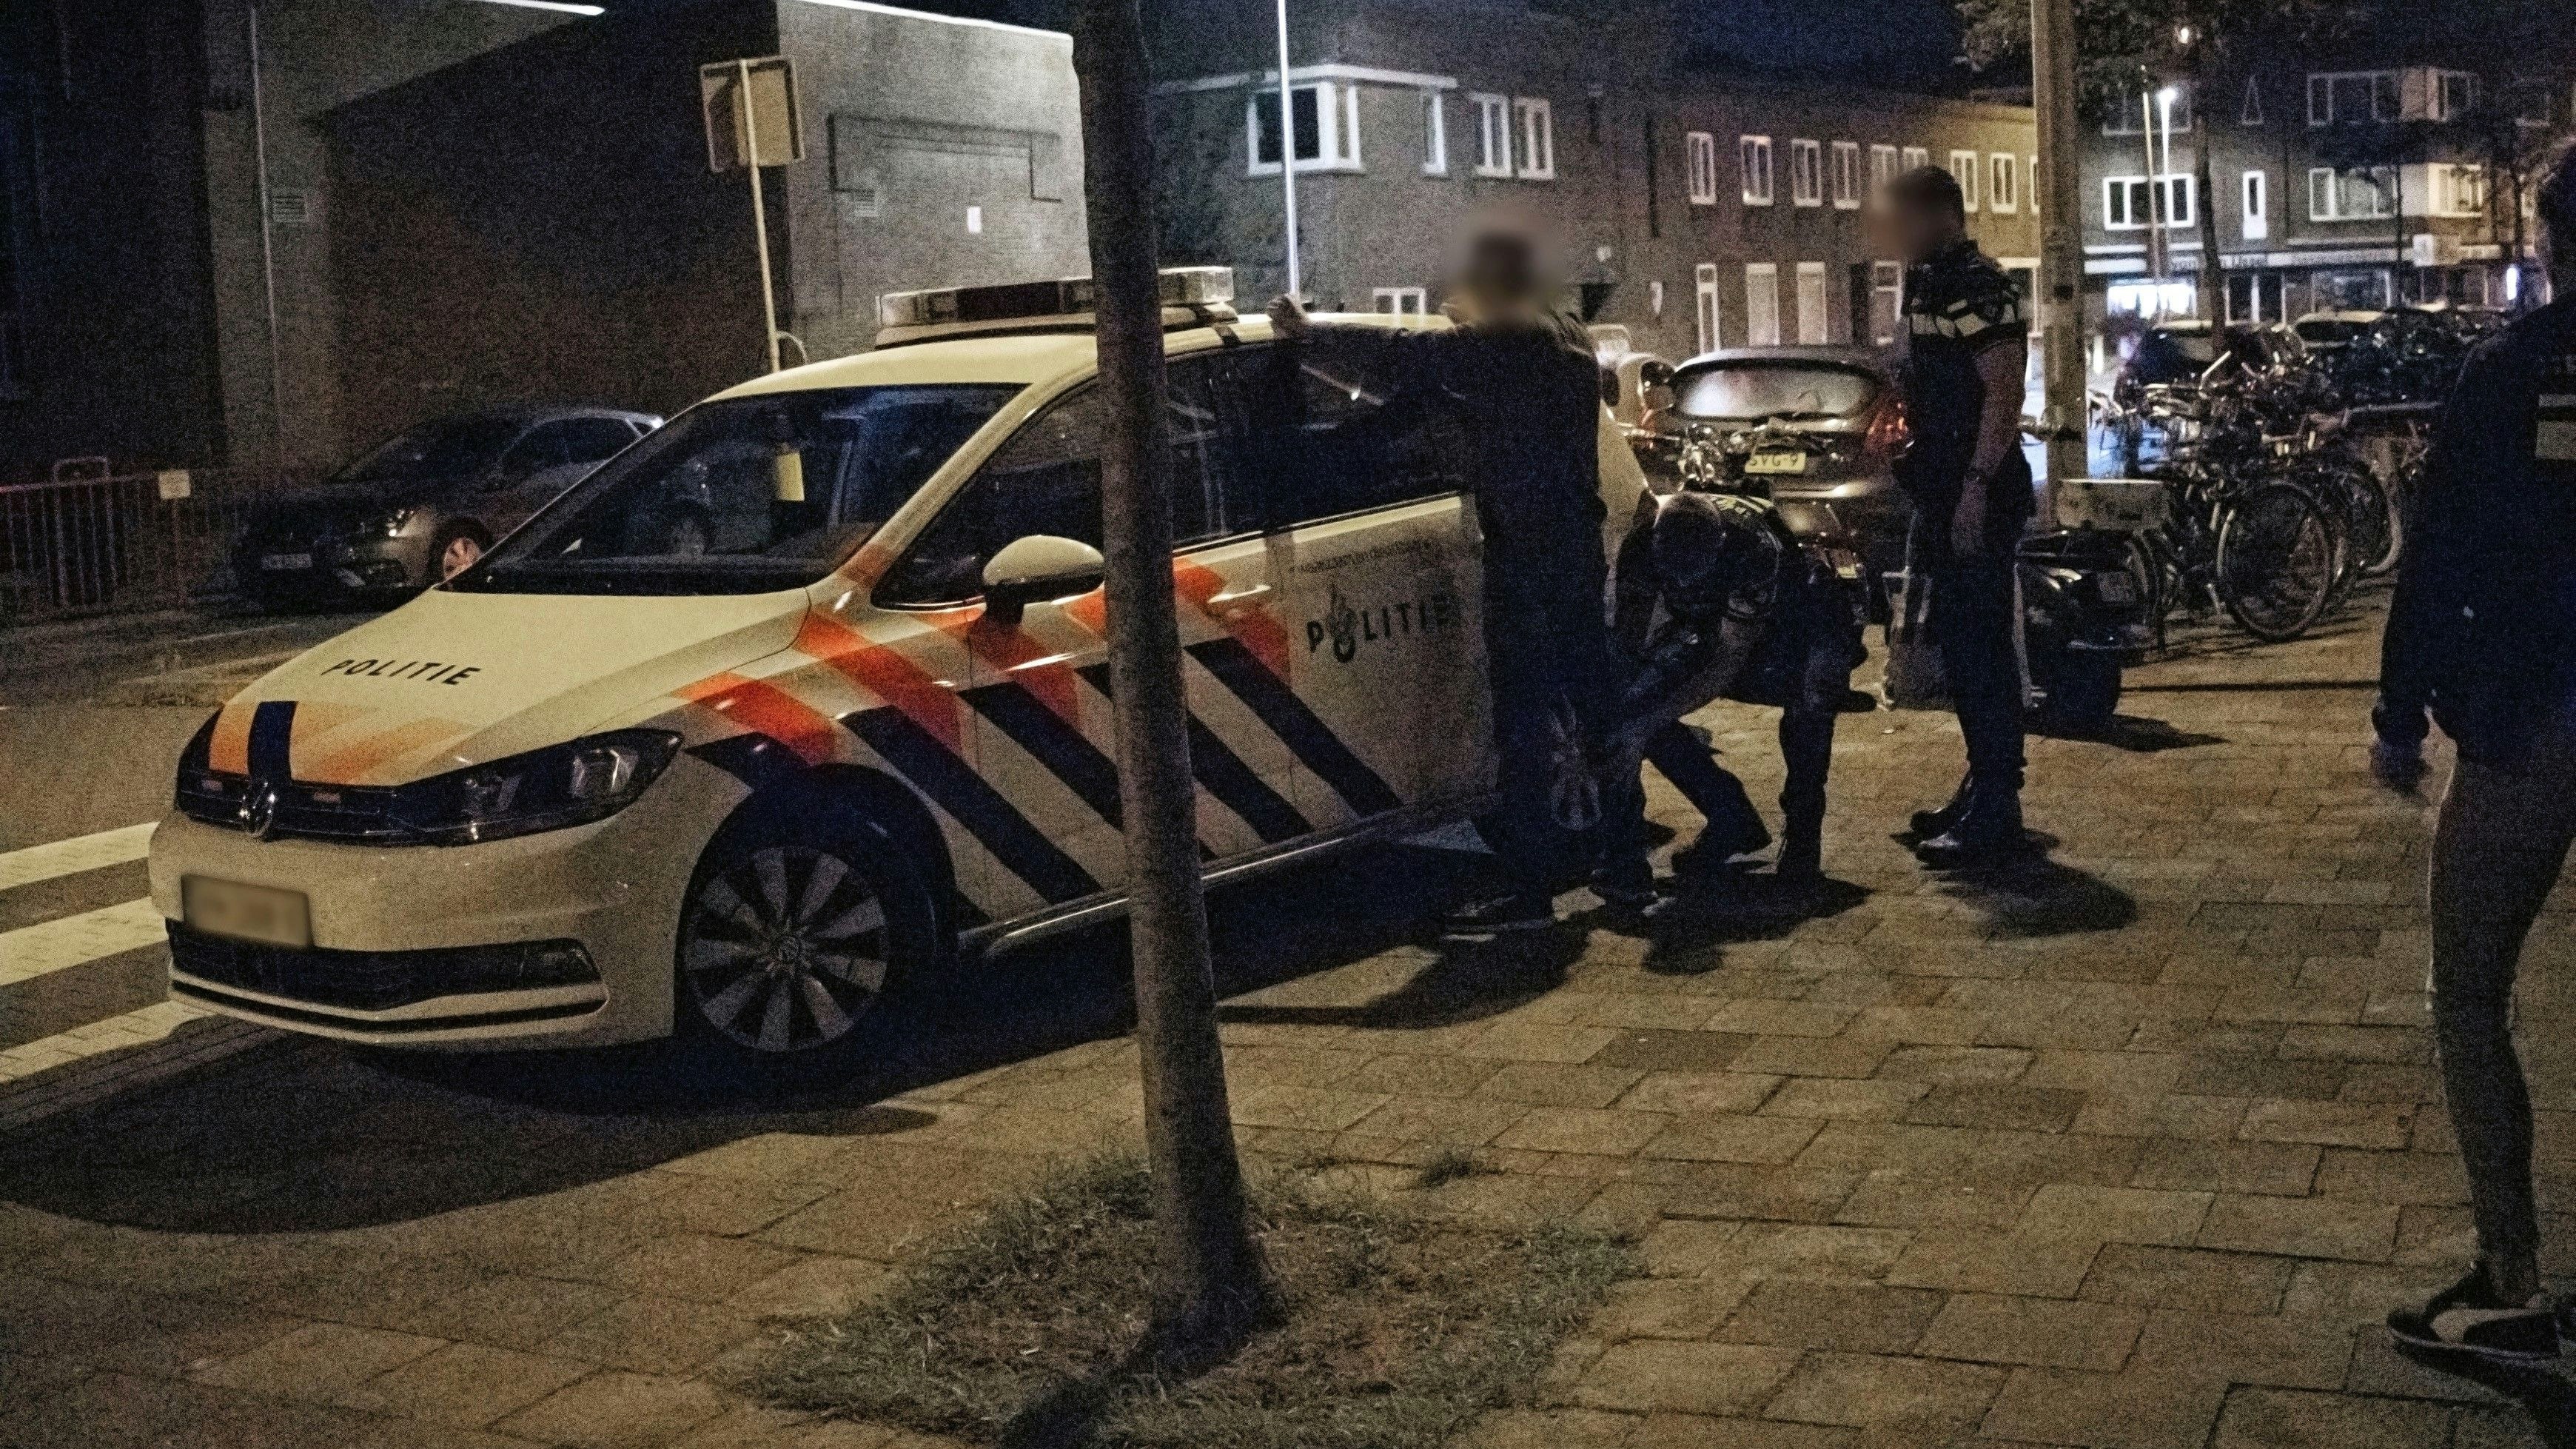 3 Männer wurden in den Niederlanden festgenommen, darunter auch der mutmaßliche Kopf der Bande. Insgesamt sitzen jetzt 9 Männer in U-Haft.&nbsp; Bild: Polizei